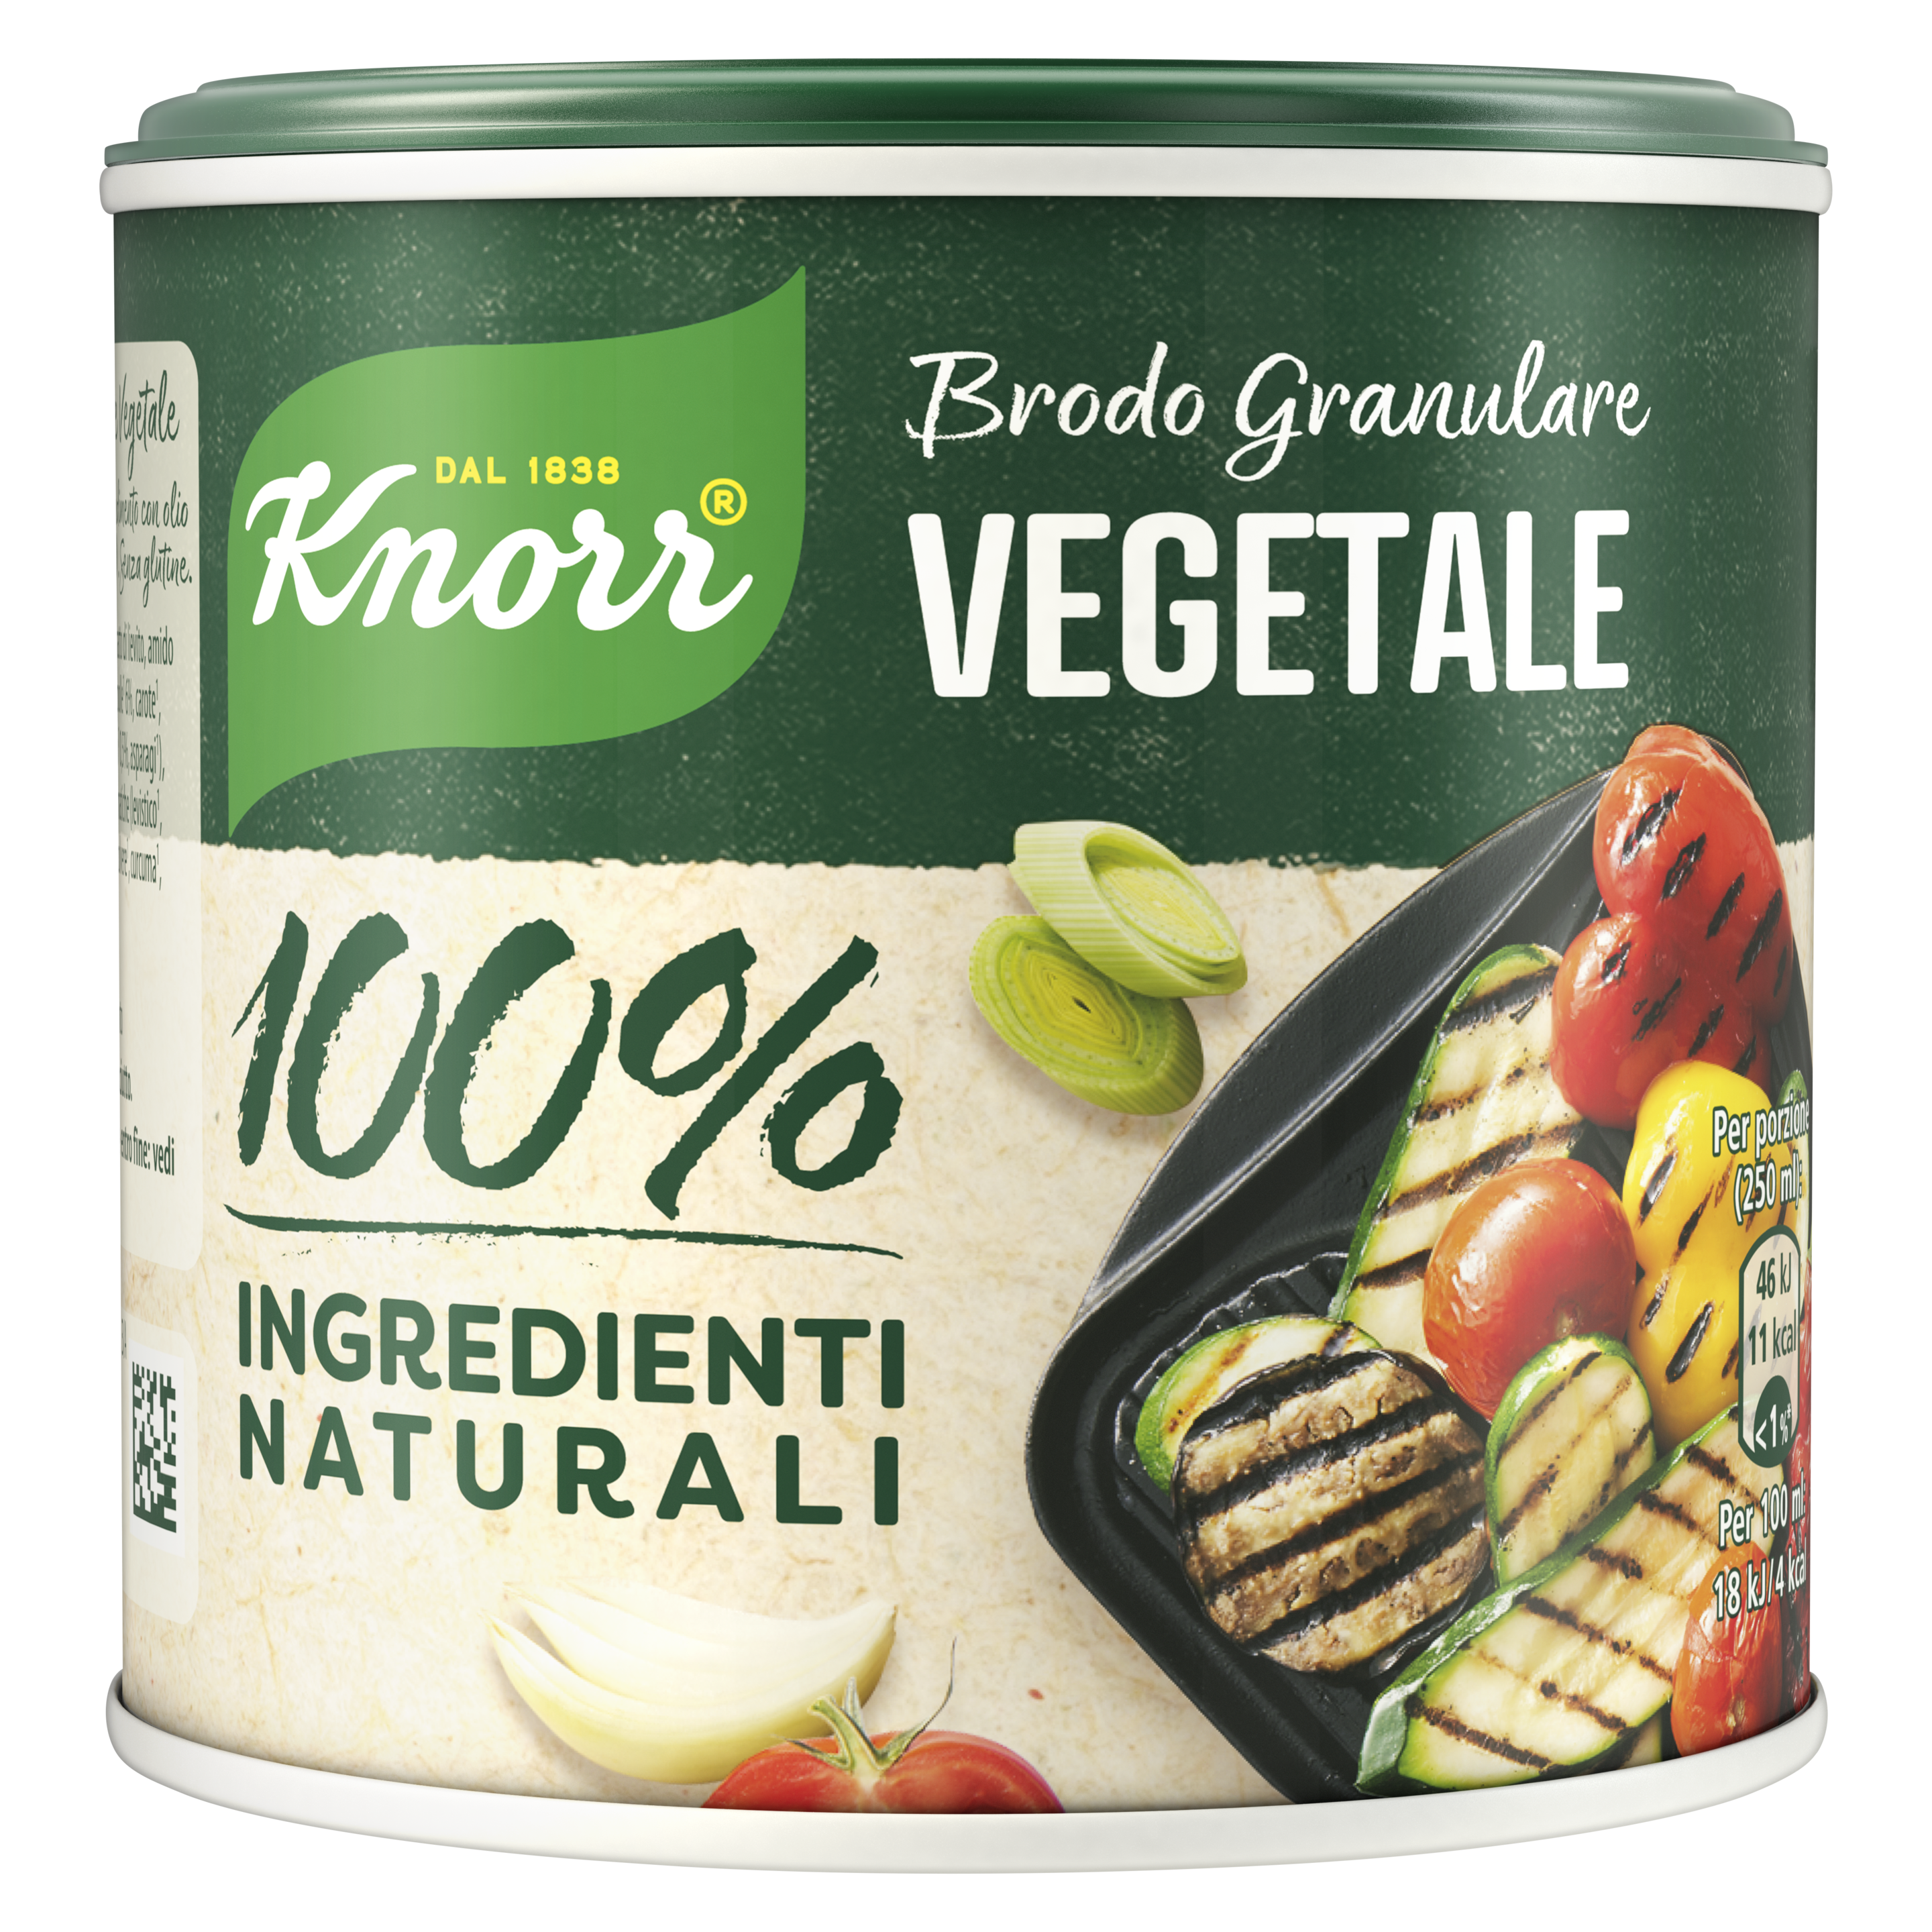 Brodo Granulare vegetali 100% Ingredienti Naturali